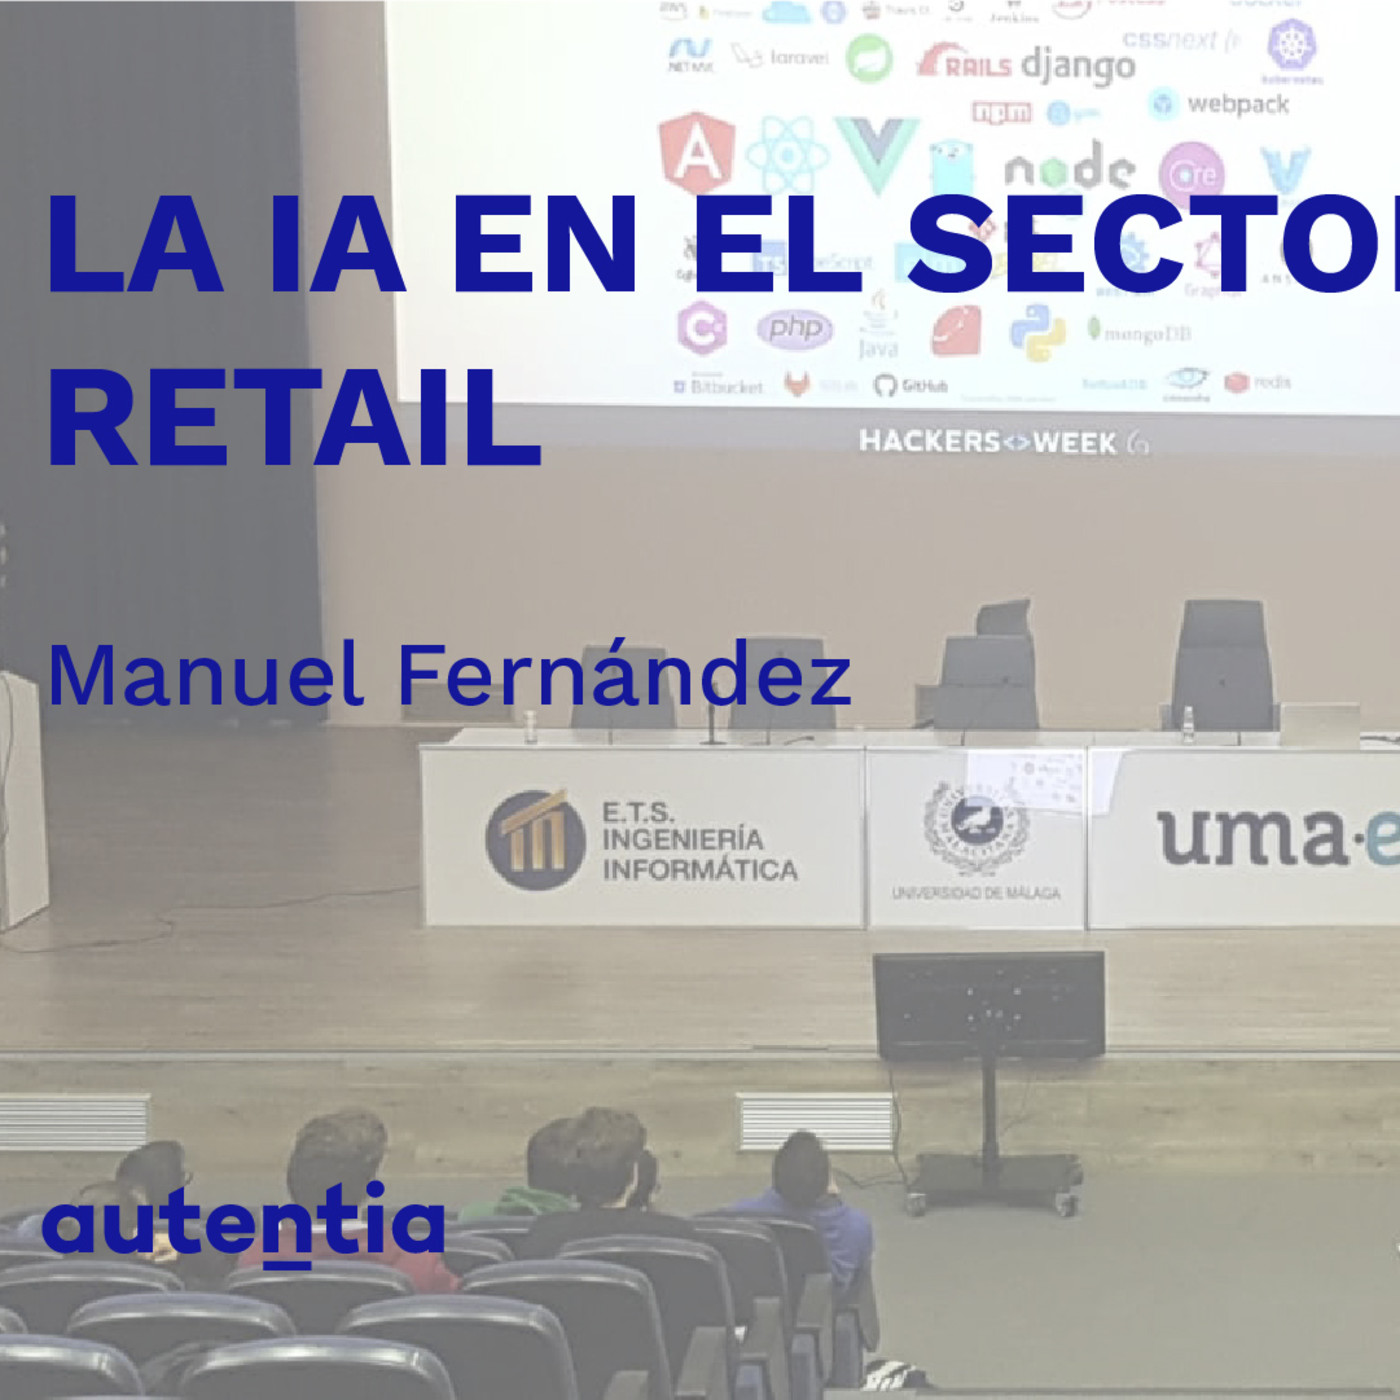 La IA en el sector Retail - Manuel Fernández